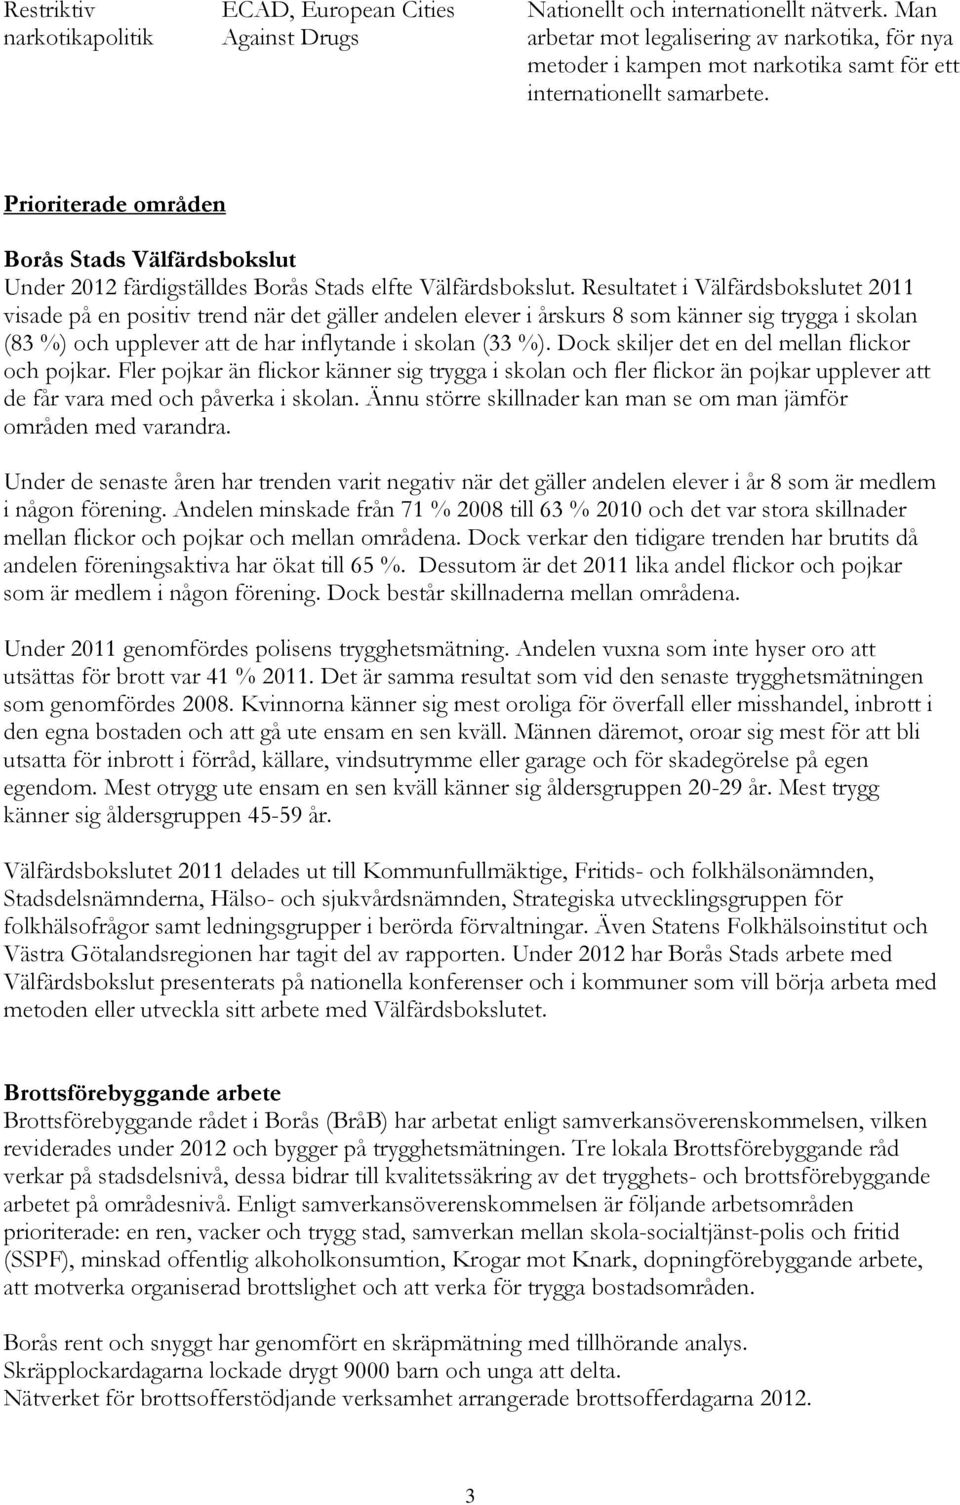 Prioriterade områden Borås Stads Välfärdsbokslut Under 2012 färdigställdes Borås Stads elfte Välfärdsbokslut.